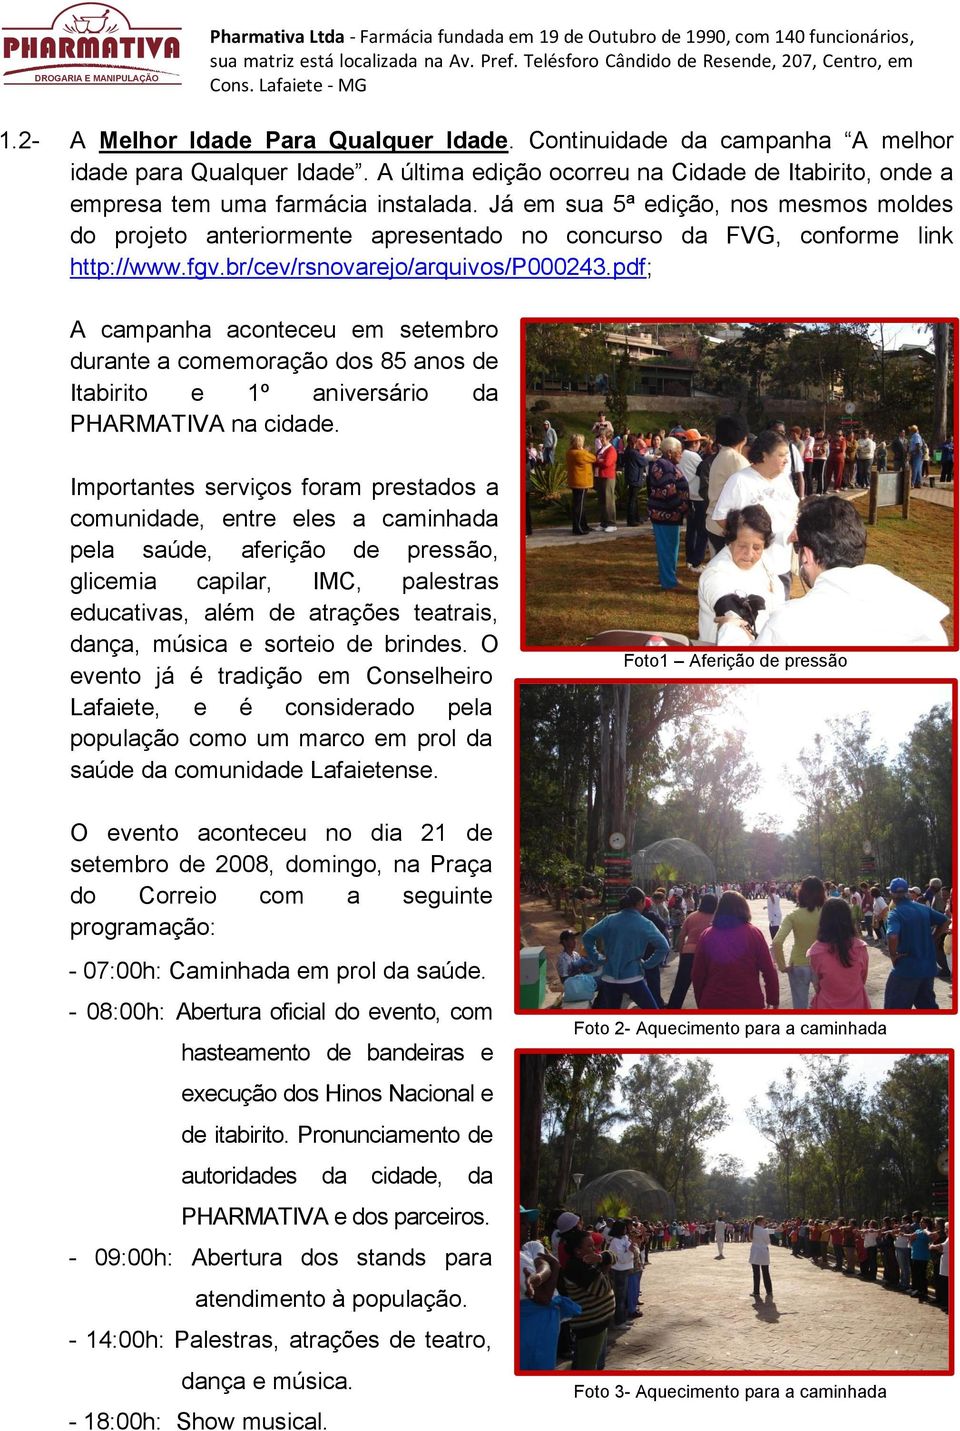 pdf; A campanha aconteceu em setembro durante a comemoração dos 85 anos de Itabirito e 1º aniversário da PHARMATIVA na cidade.